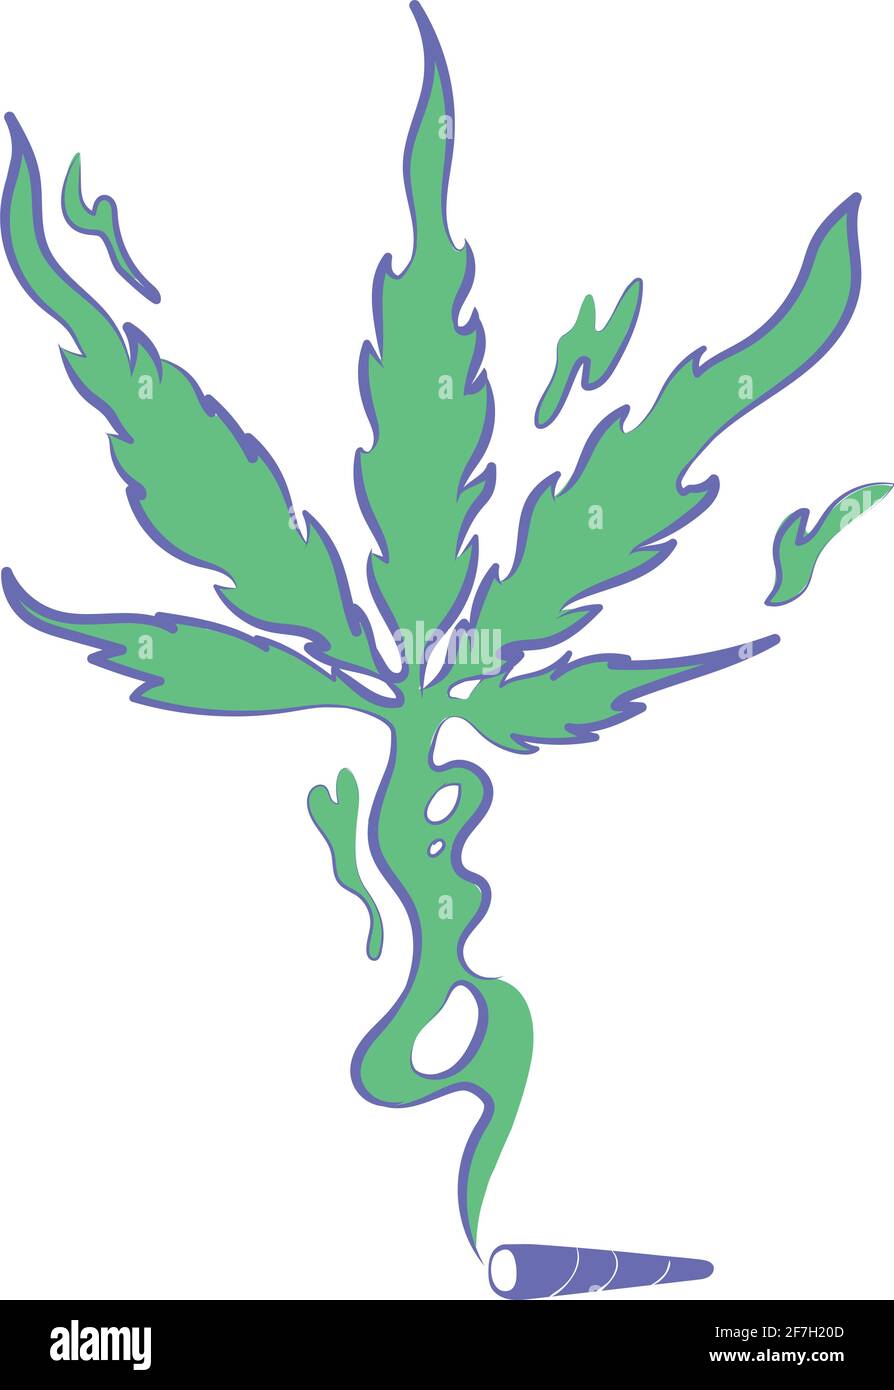 Spacco congiunto con fumo che crea la foglia di marijuana Illustrazione Vettoriale